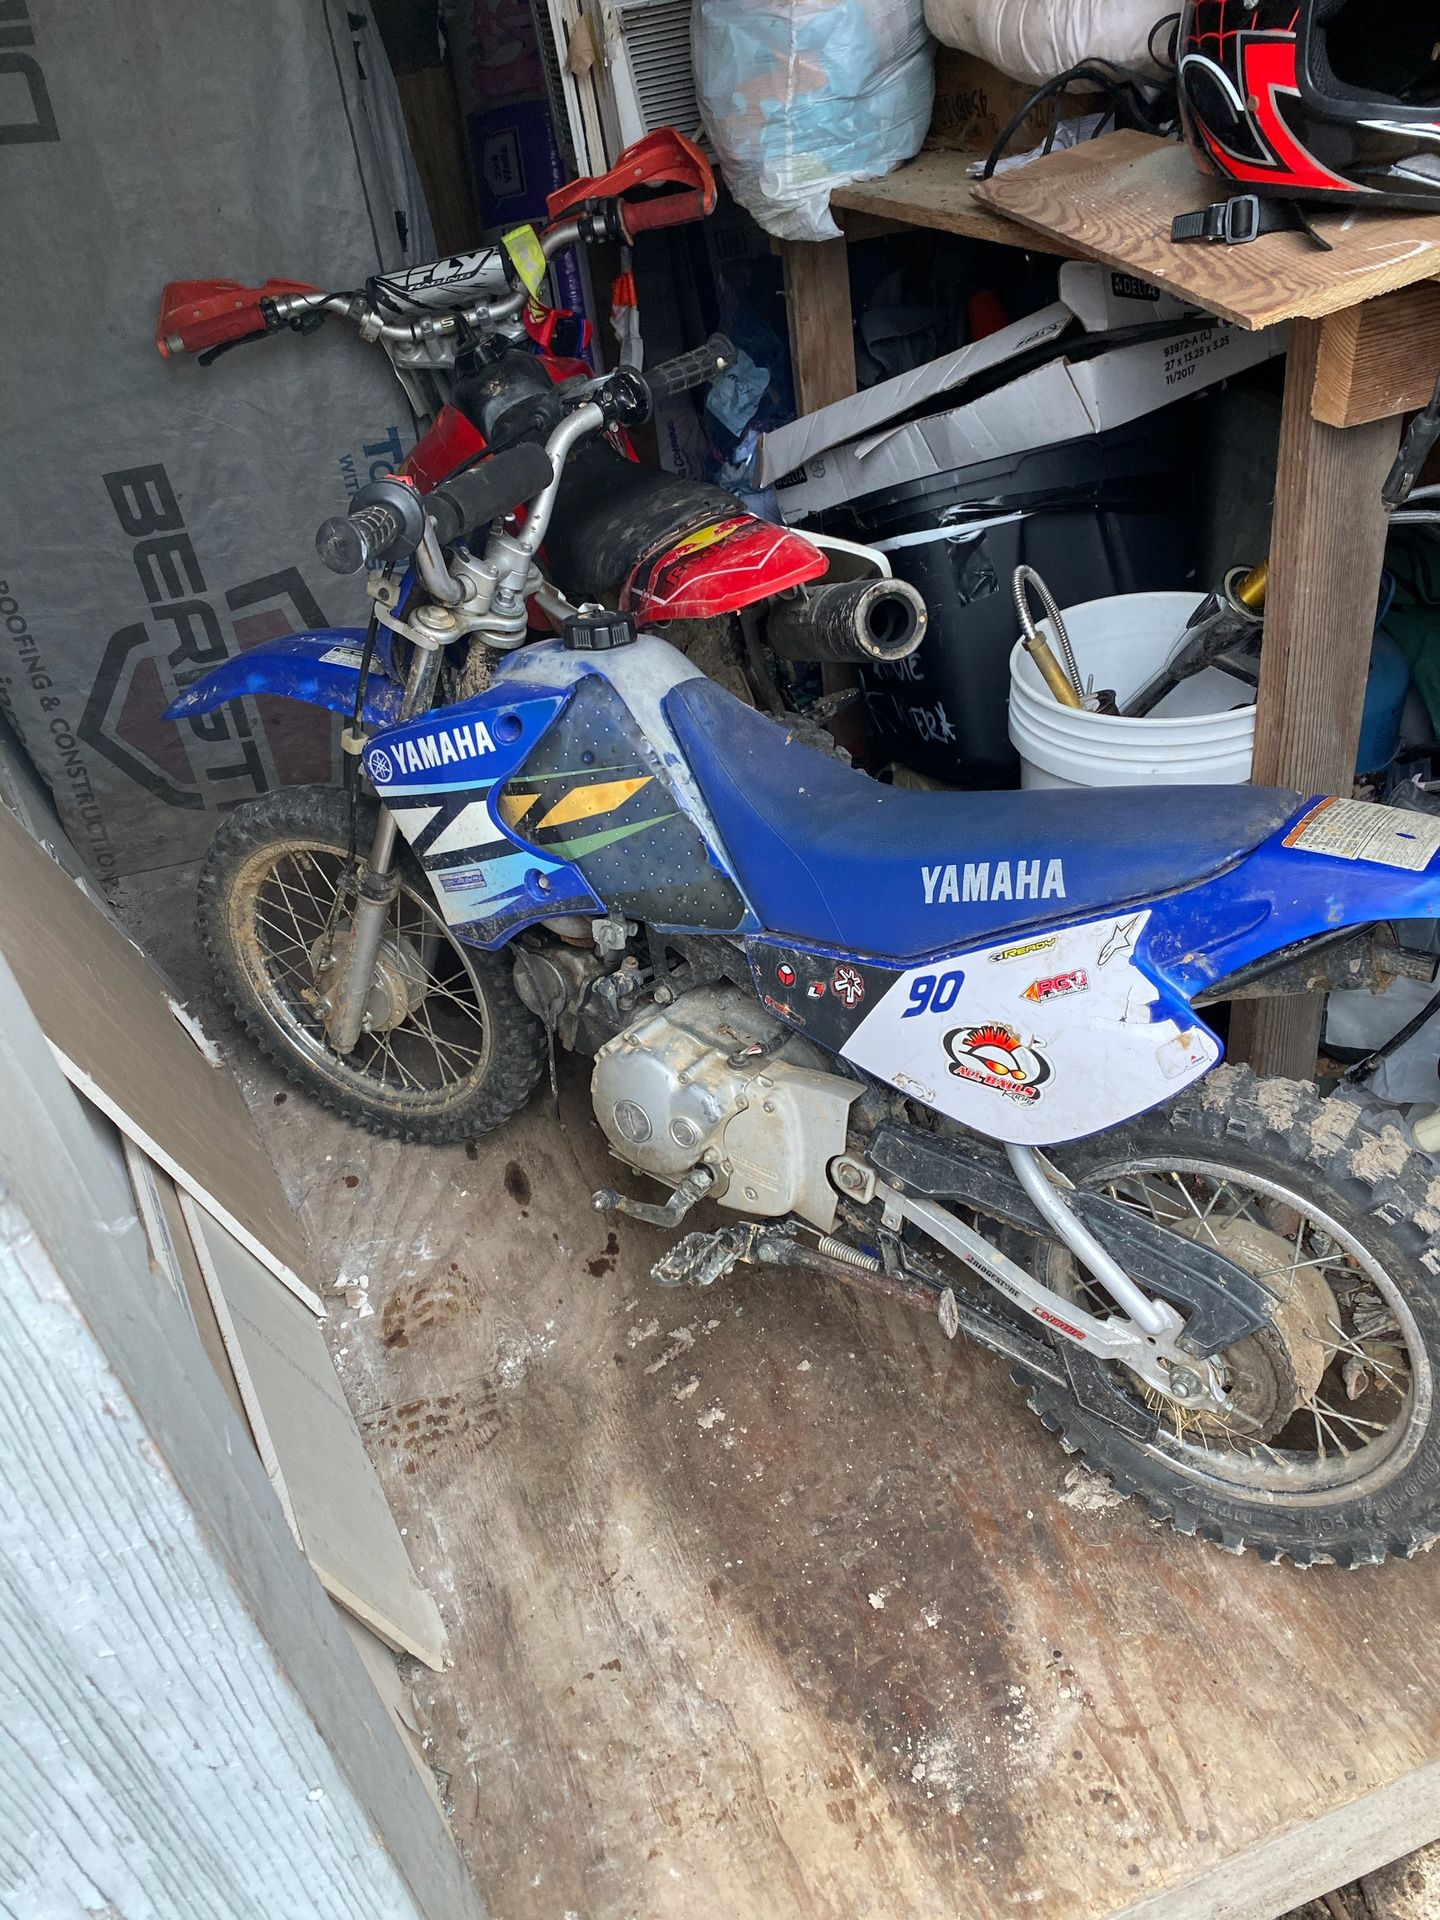 Blue Yamaha dirt bike